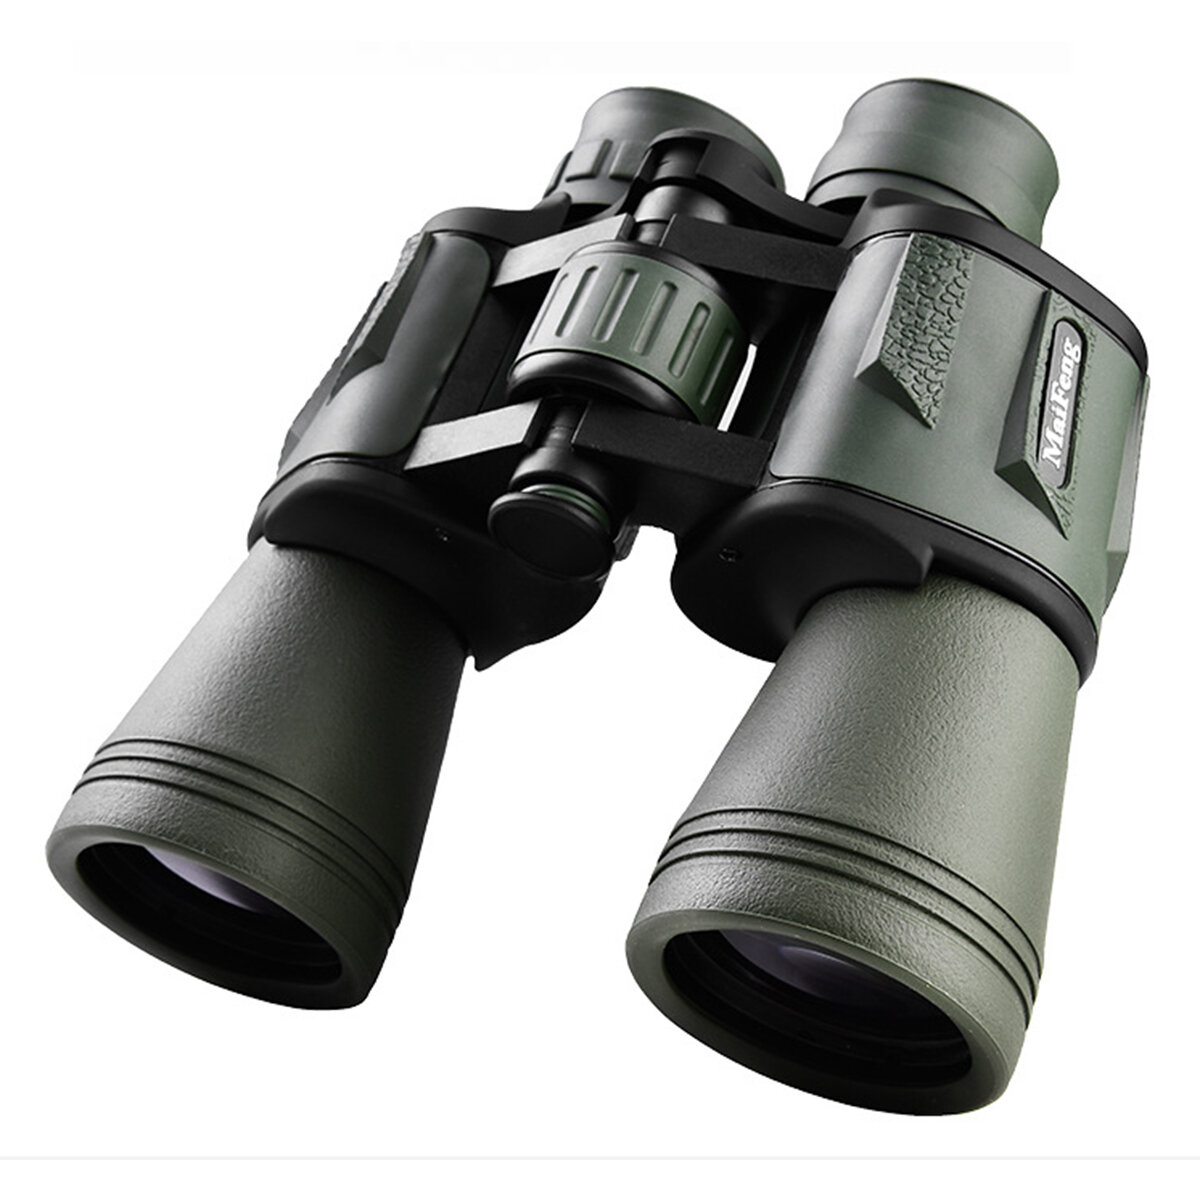 20X50ハイパワープロフェッショナル望遠鏡、長距離HD双眼鏡、屋外夜間視野、キャンプ、狩猟、旅行